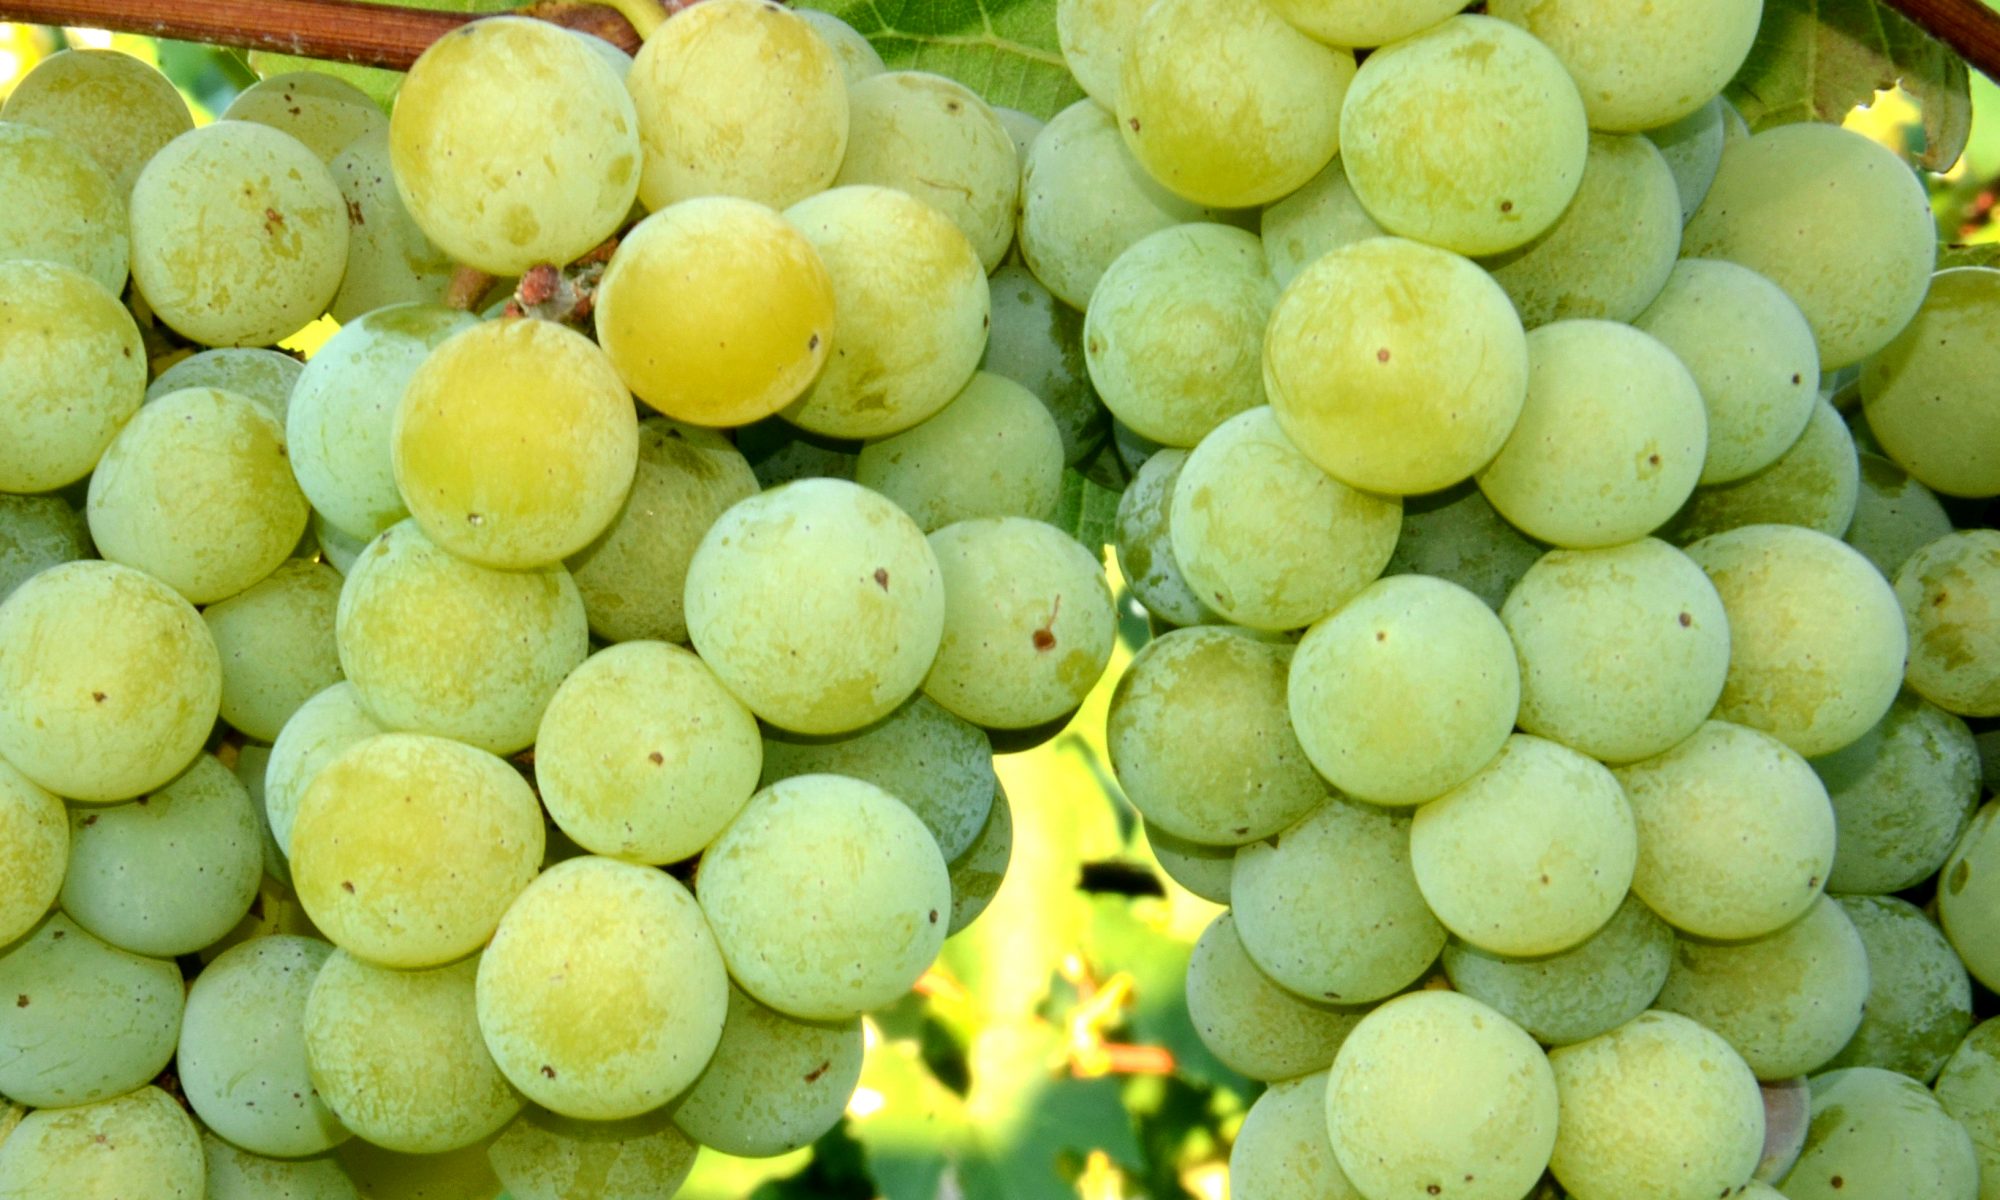 Niagara grapes at Wenger Grapes.